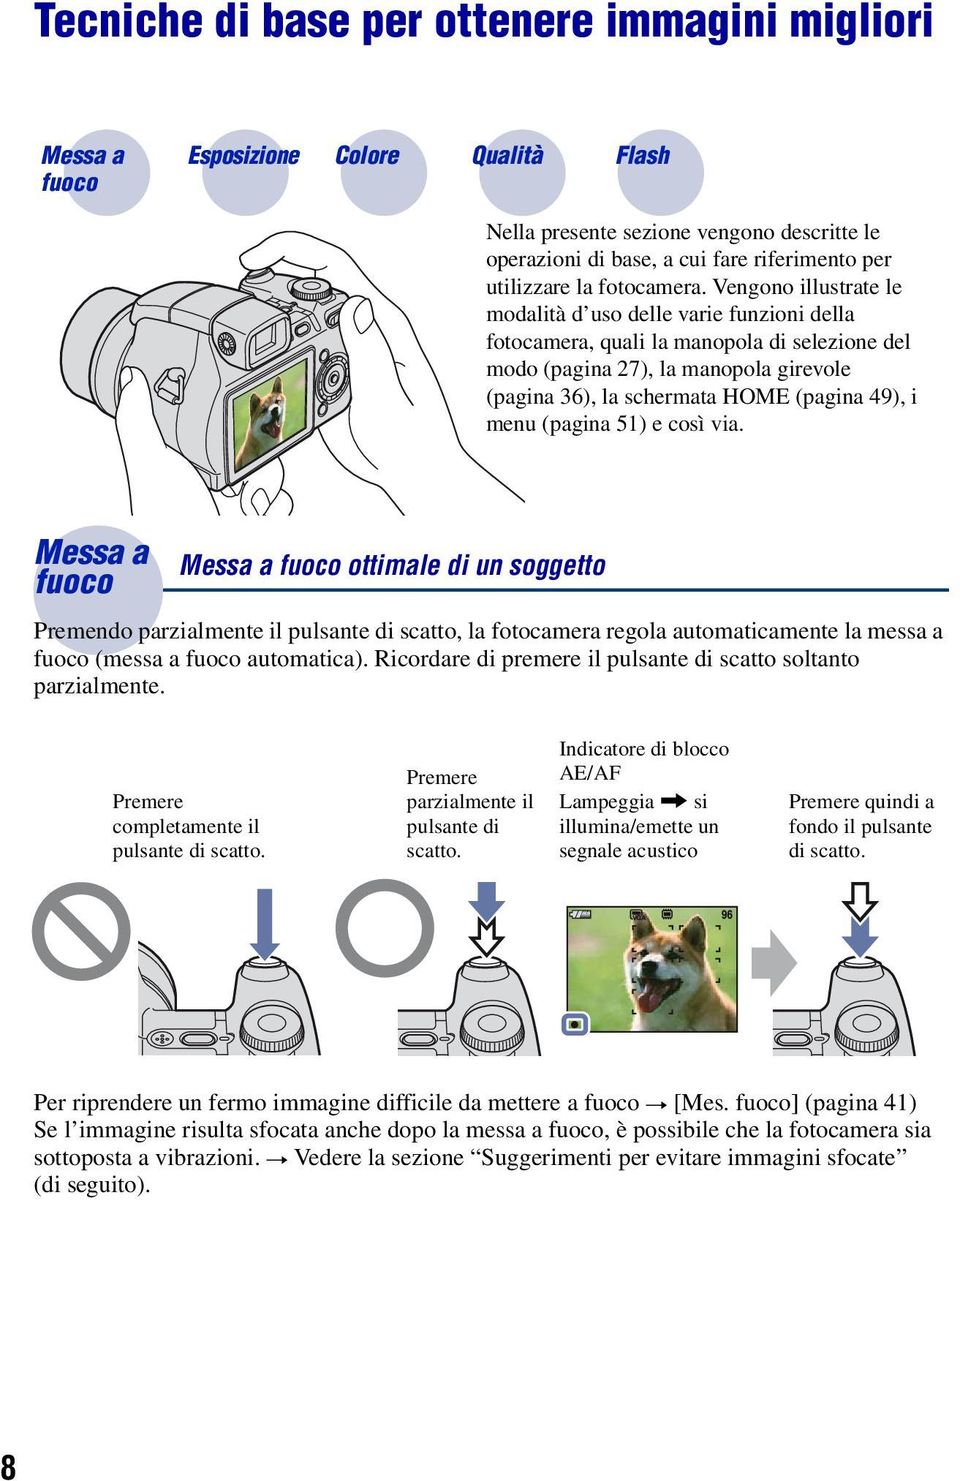 Vengono illustrate le modalità d uso delle varie funzioni della fotocamera, quali la manopola di selezione del modo (pagina 27), la manopola girevole (pagina 36), la schermata HOME (pagina 49), i